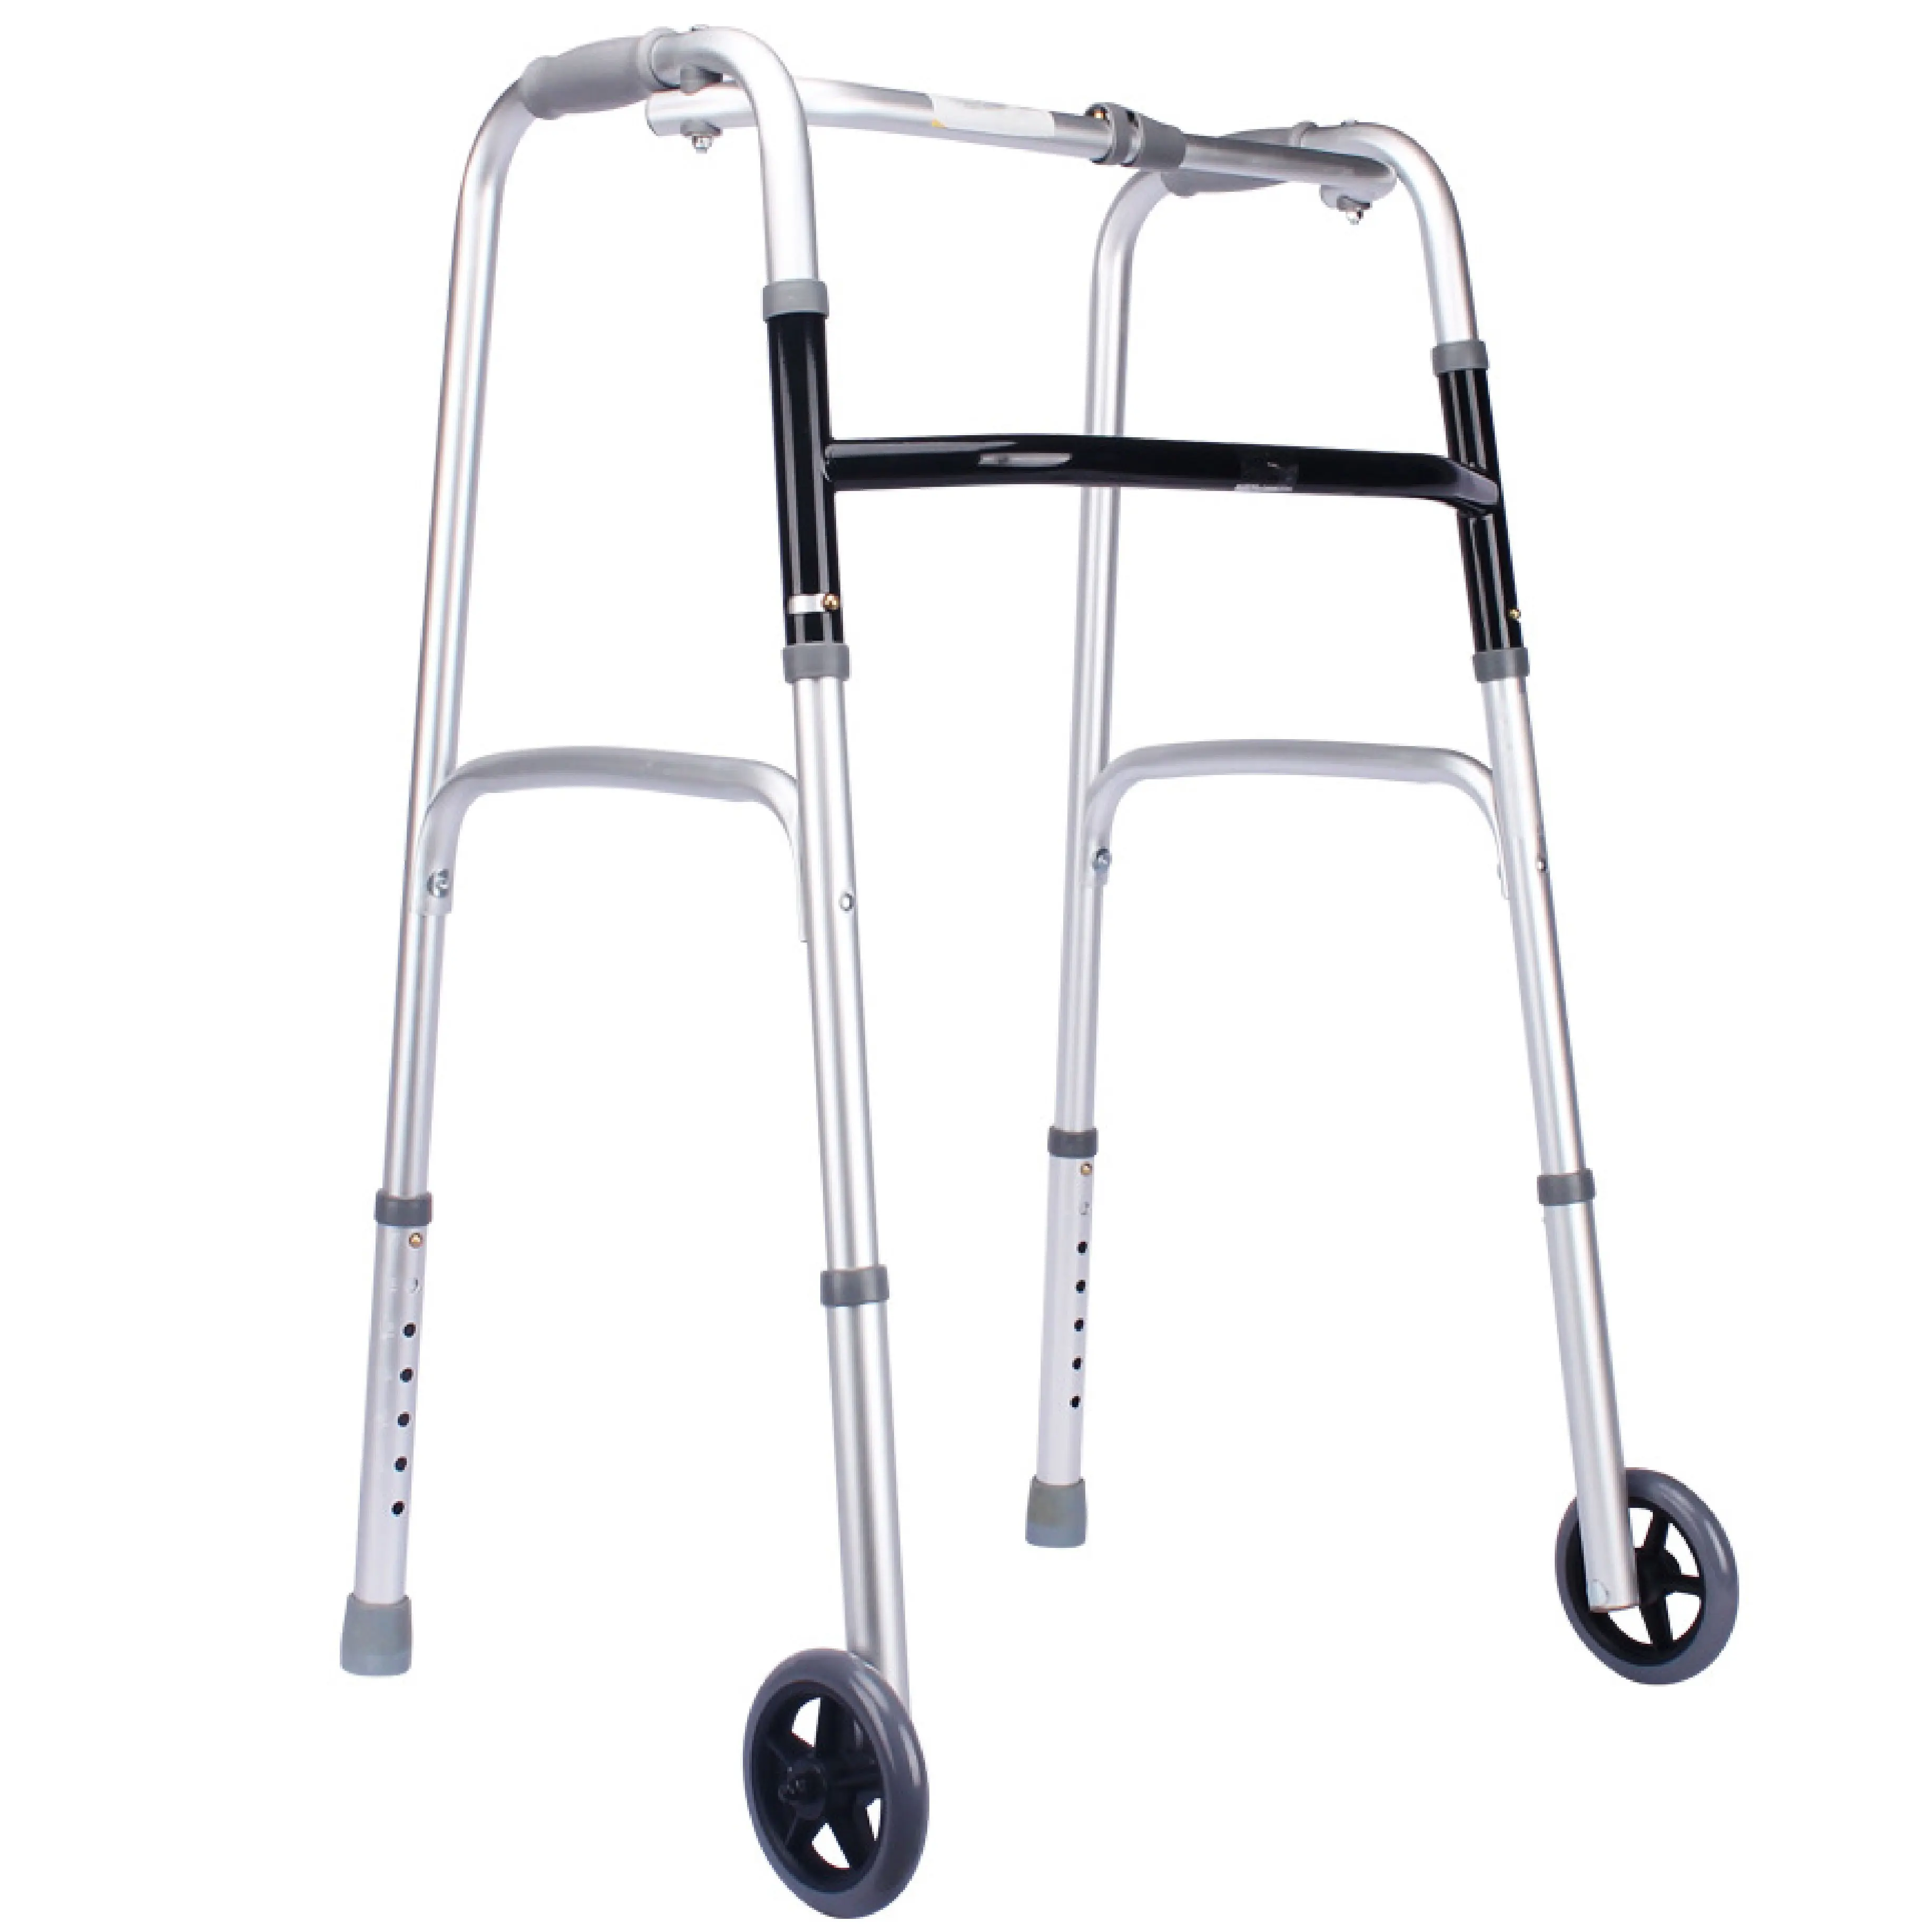 300BLS 성인용 싱글 접이식 알루미늄 워커 바퀴가있는 노인 장애인 용 롤러 카테고리 안전 지원